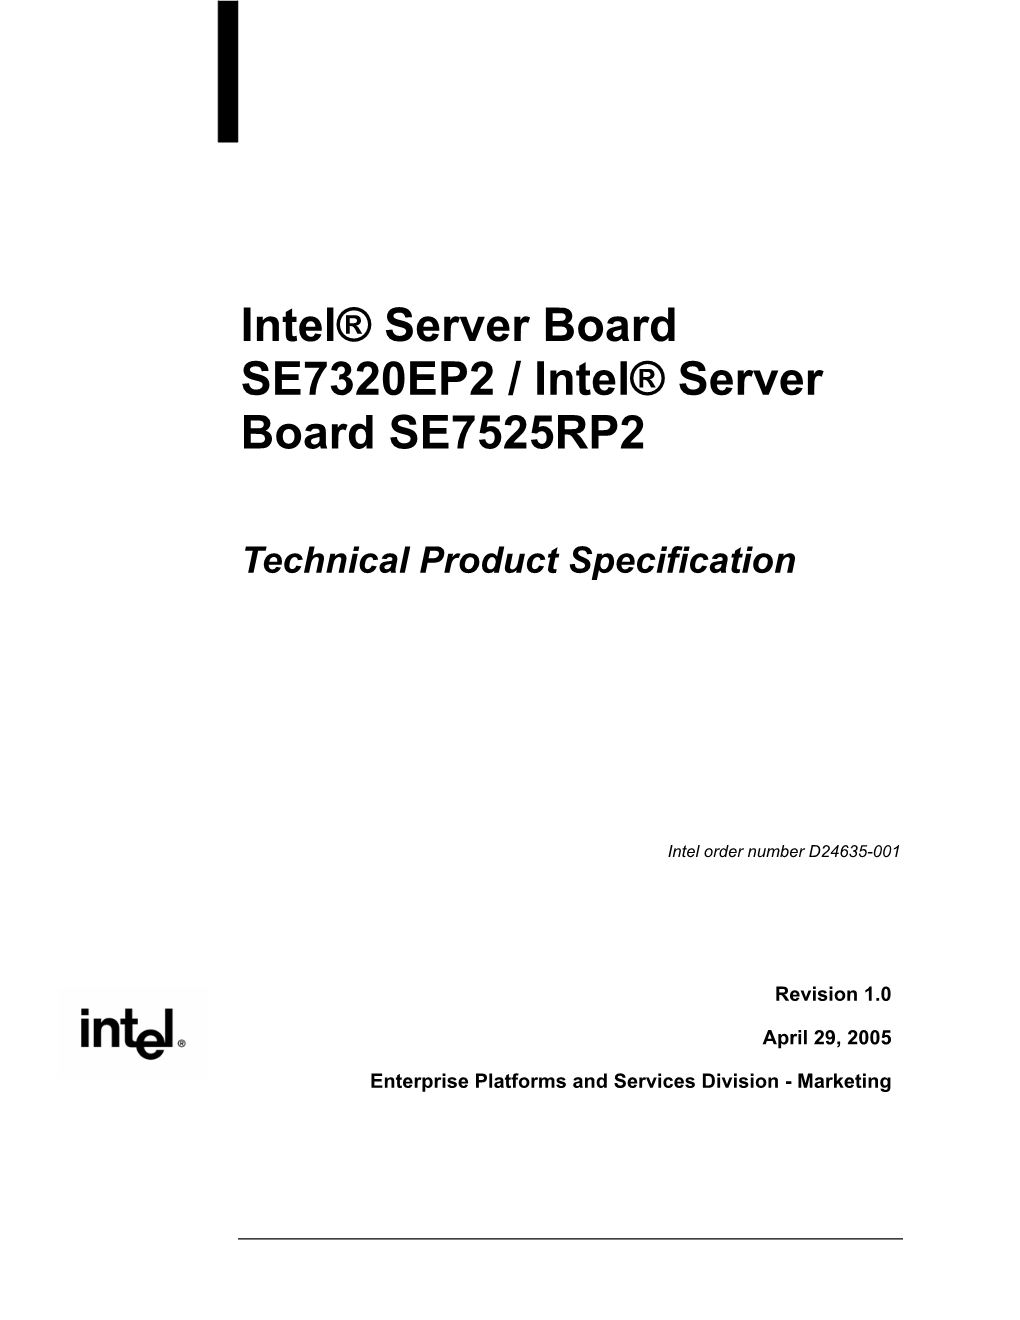 Intel® Server Board SE7320EP2 / Intel® Server Board SE7525RP2